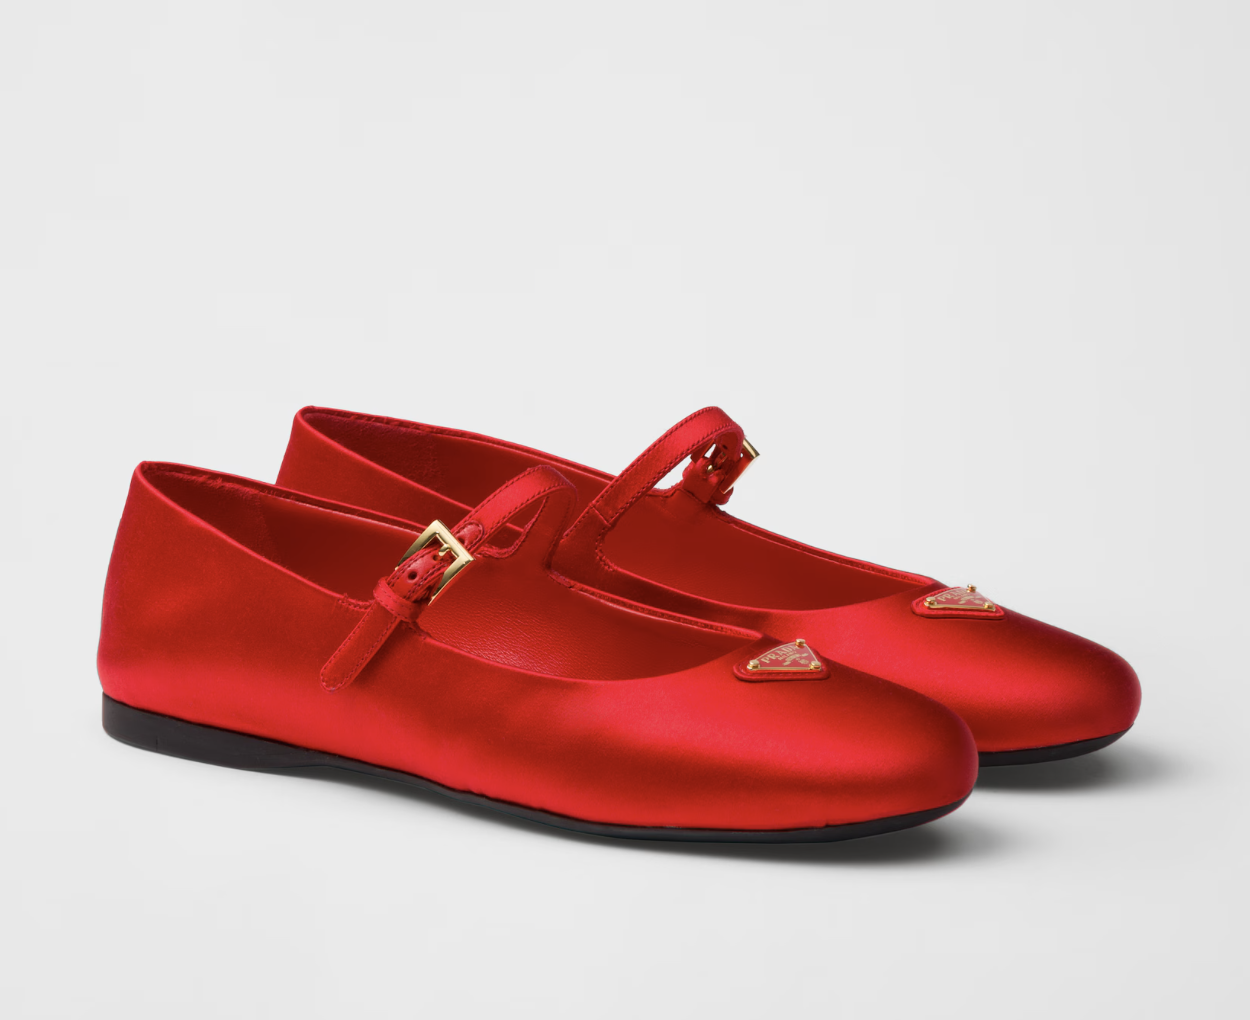 κόκκινες μπαλαρίνες: τα παπούτσια που θα δώσουν στυλ στην πιο απλή εμφάνιση